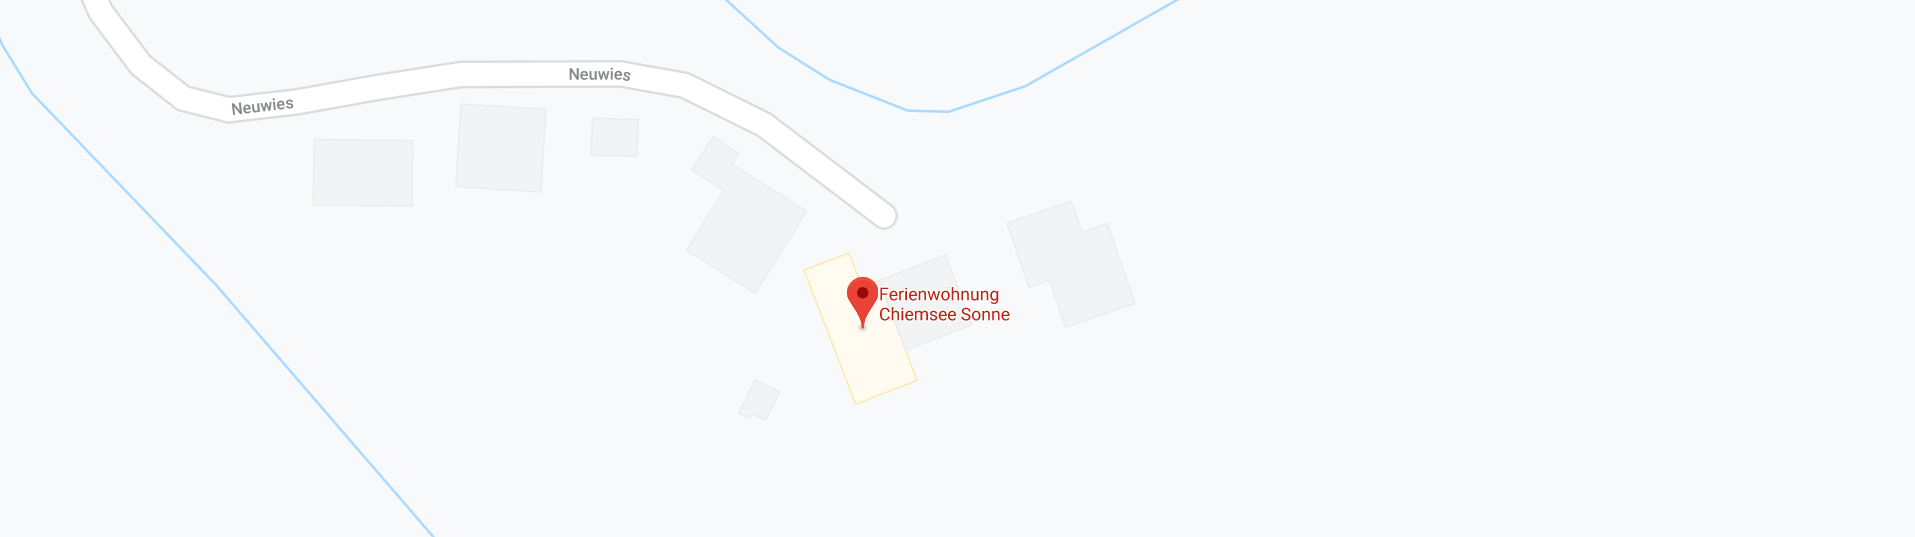 Ferienwohnung Chiemsee Sonne Google Maps